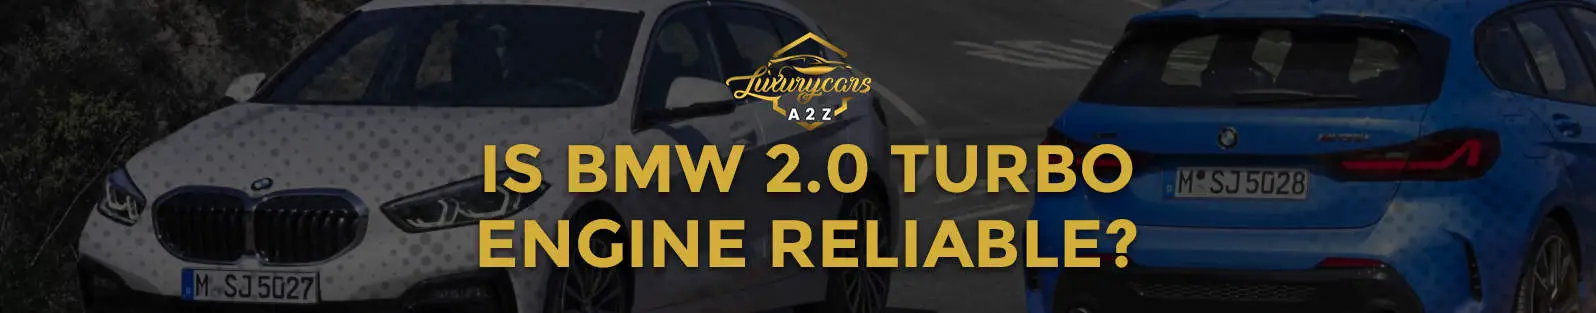 Le moteur 2.0 turbo de la BMW est-il fiable ?